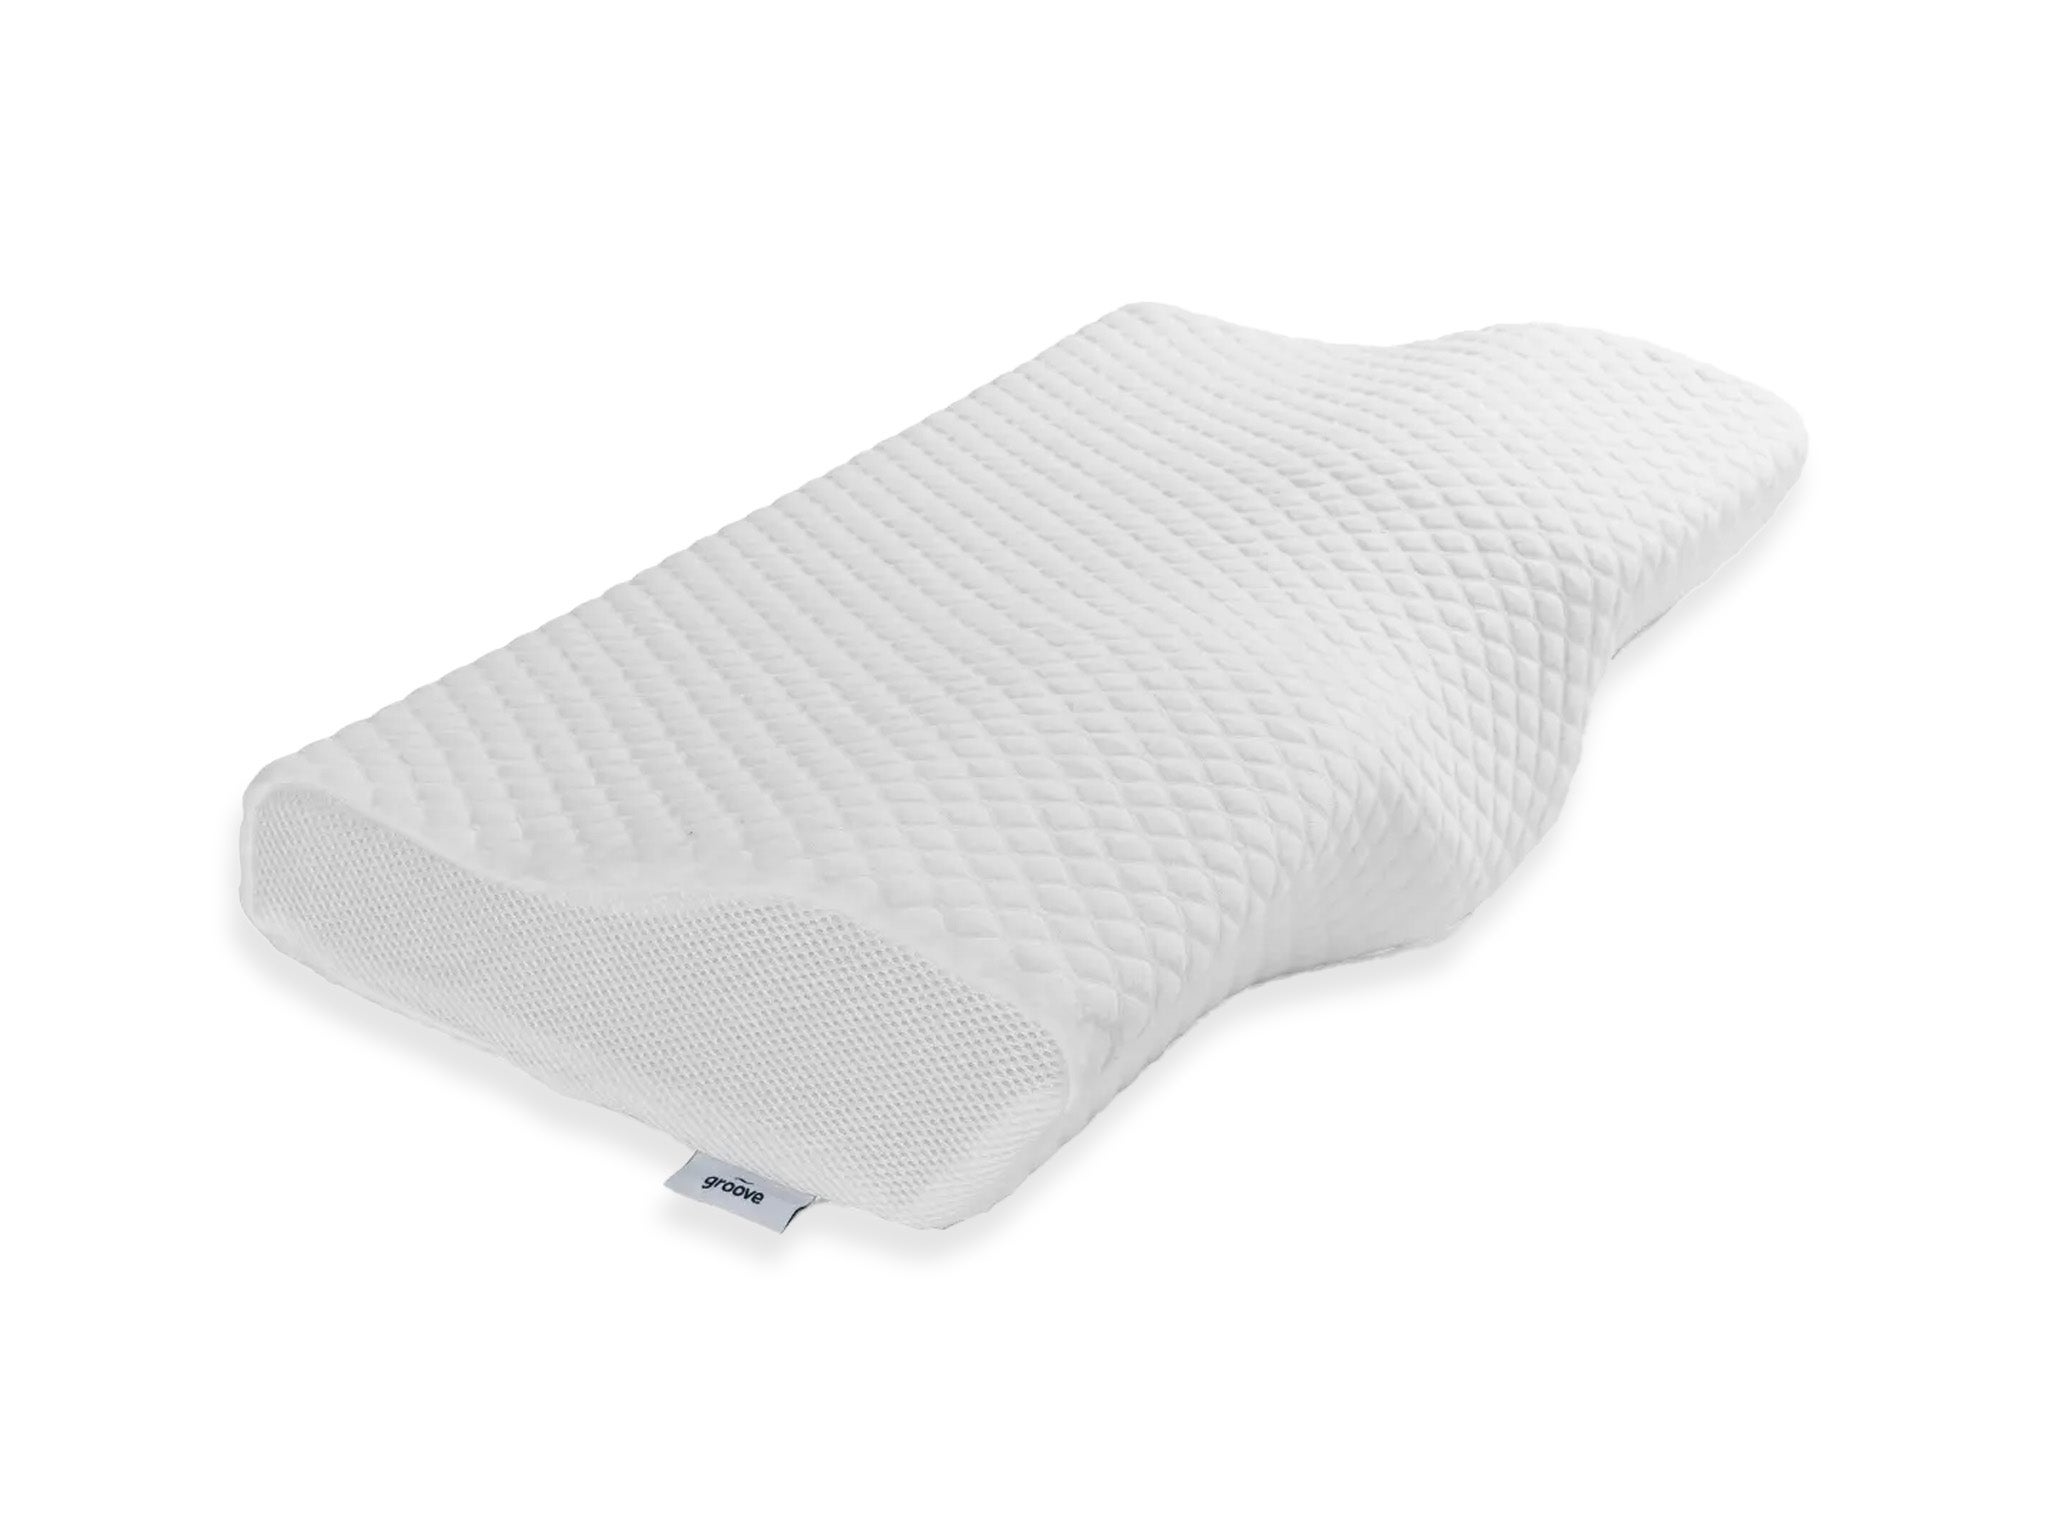 10 Best Memory Foam Pillows of 2022